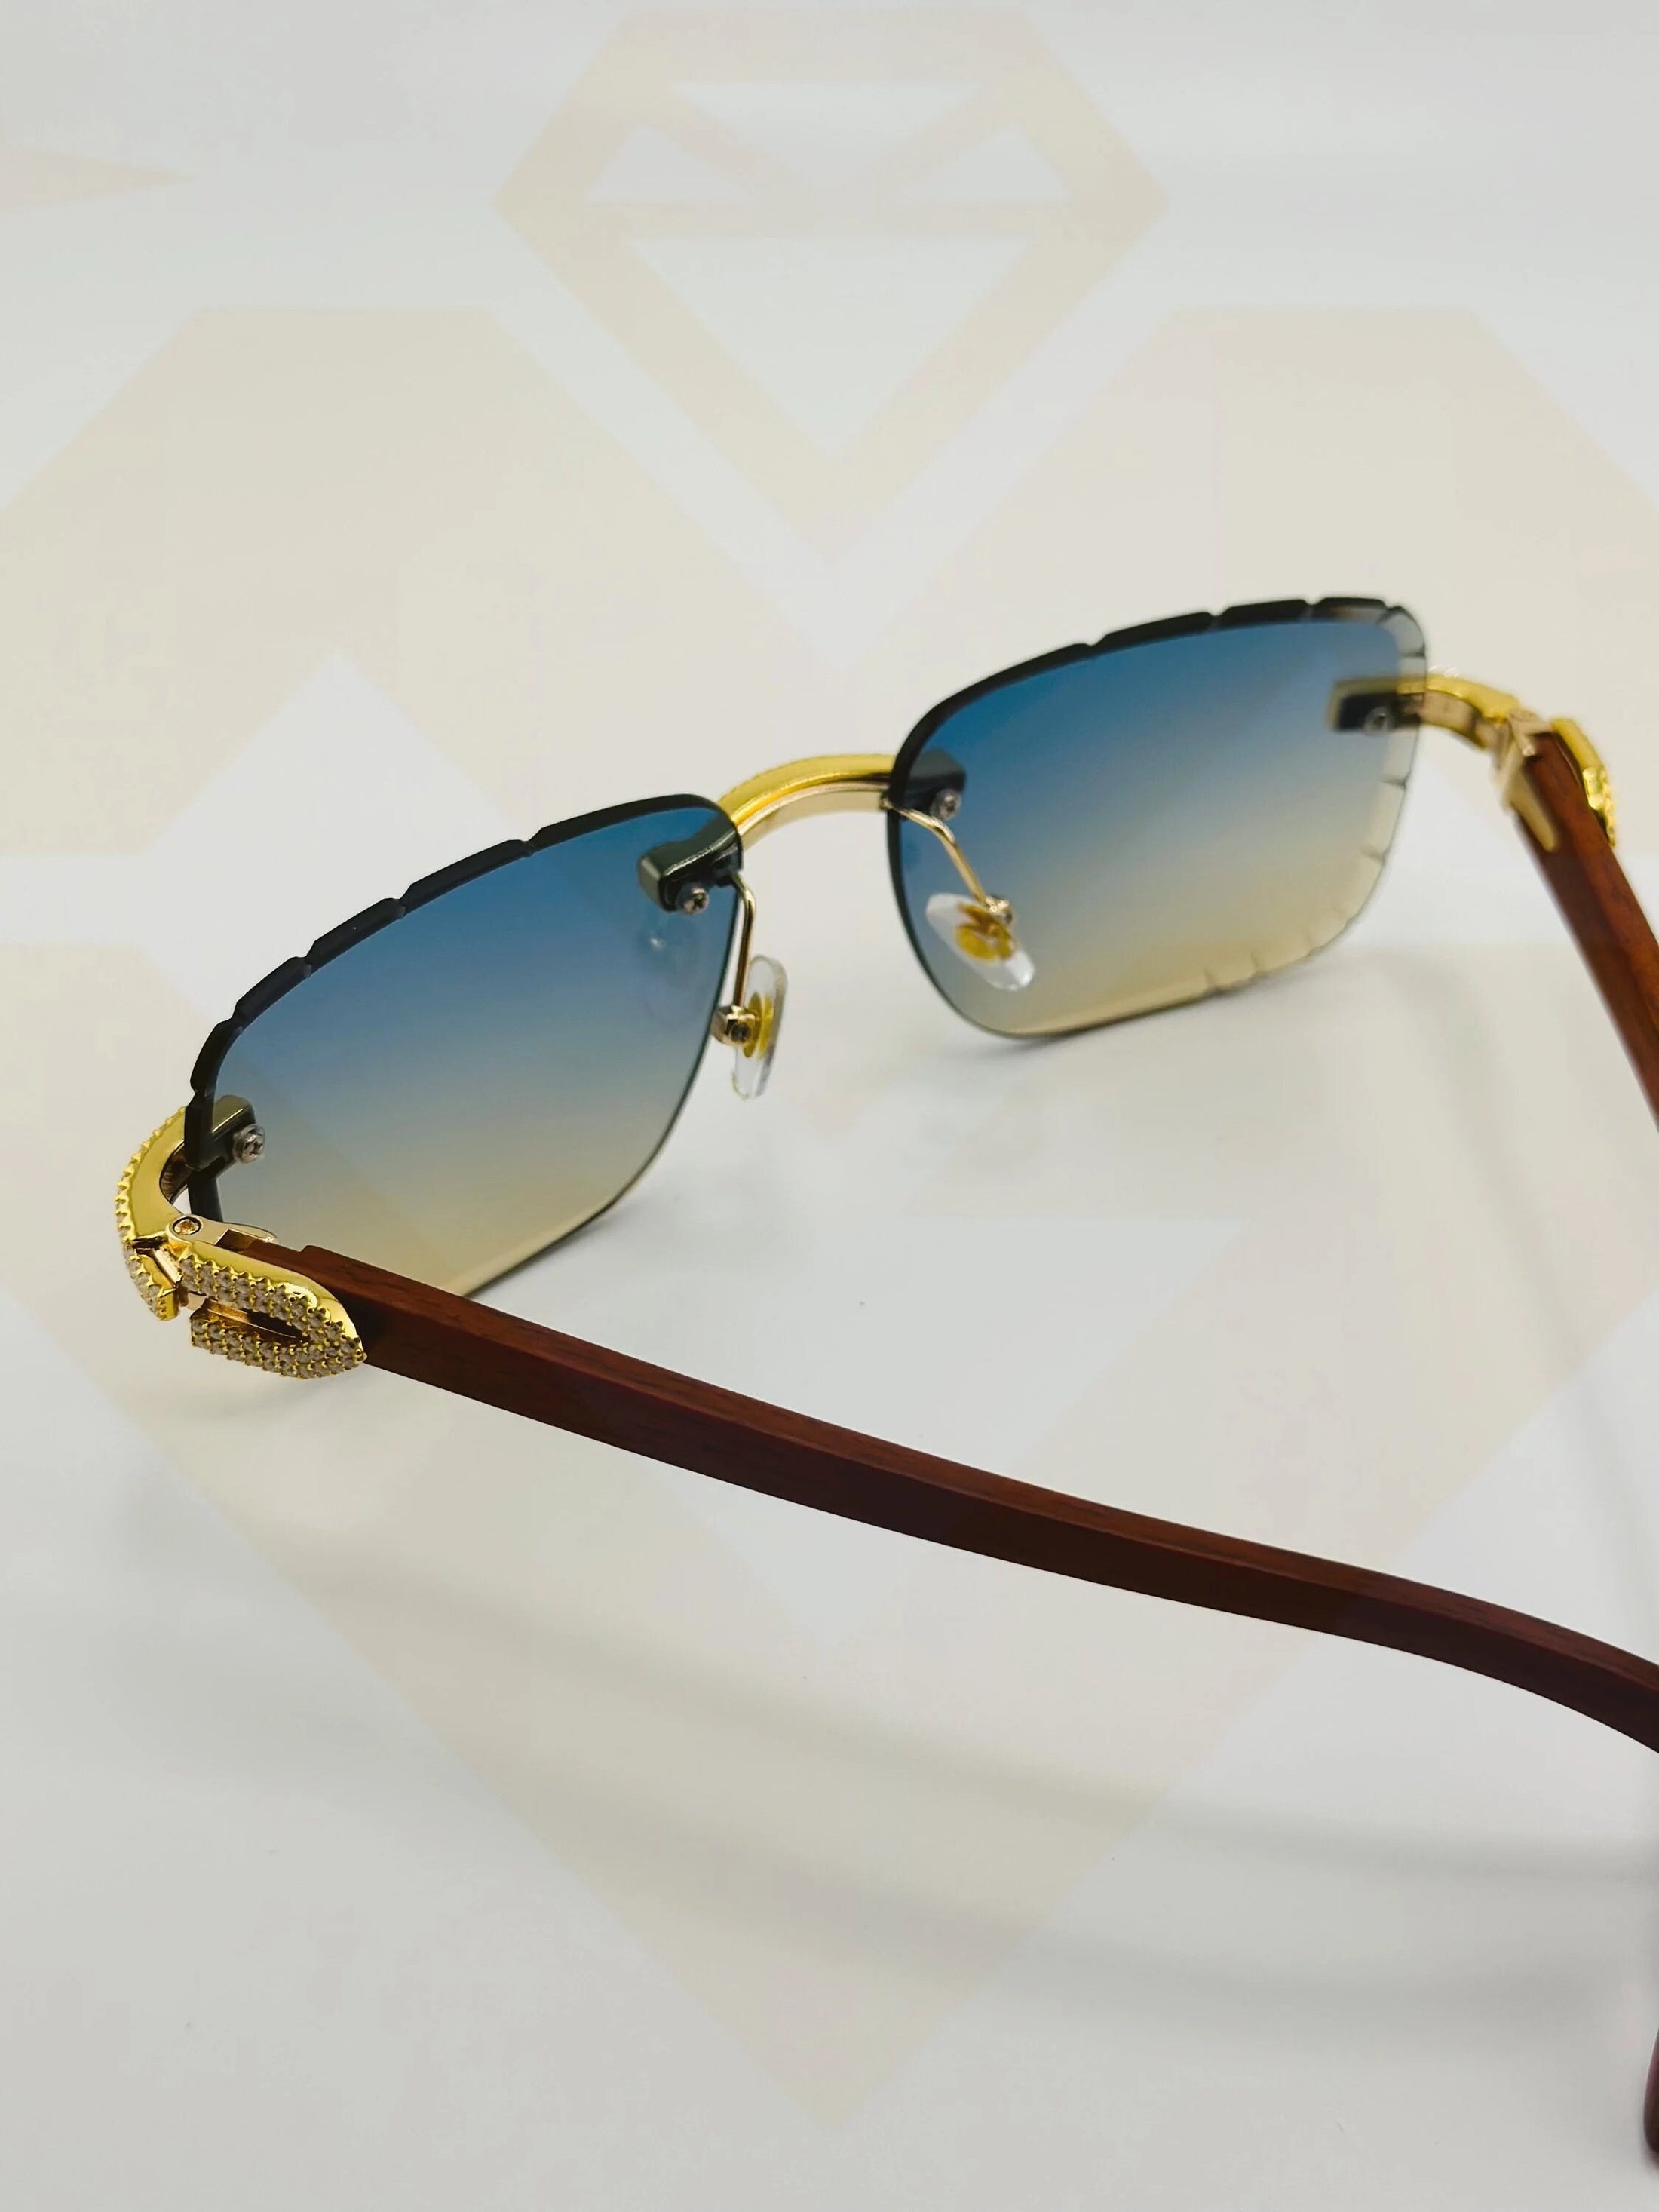 Vvs Diamond Sunglasses, Unisex Iced out GRA Certified Glasses for Men/women, Best unique gift, custom made, Head turner gift for Christmas